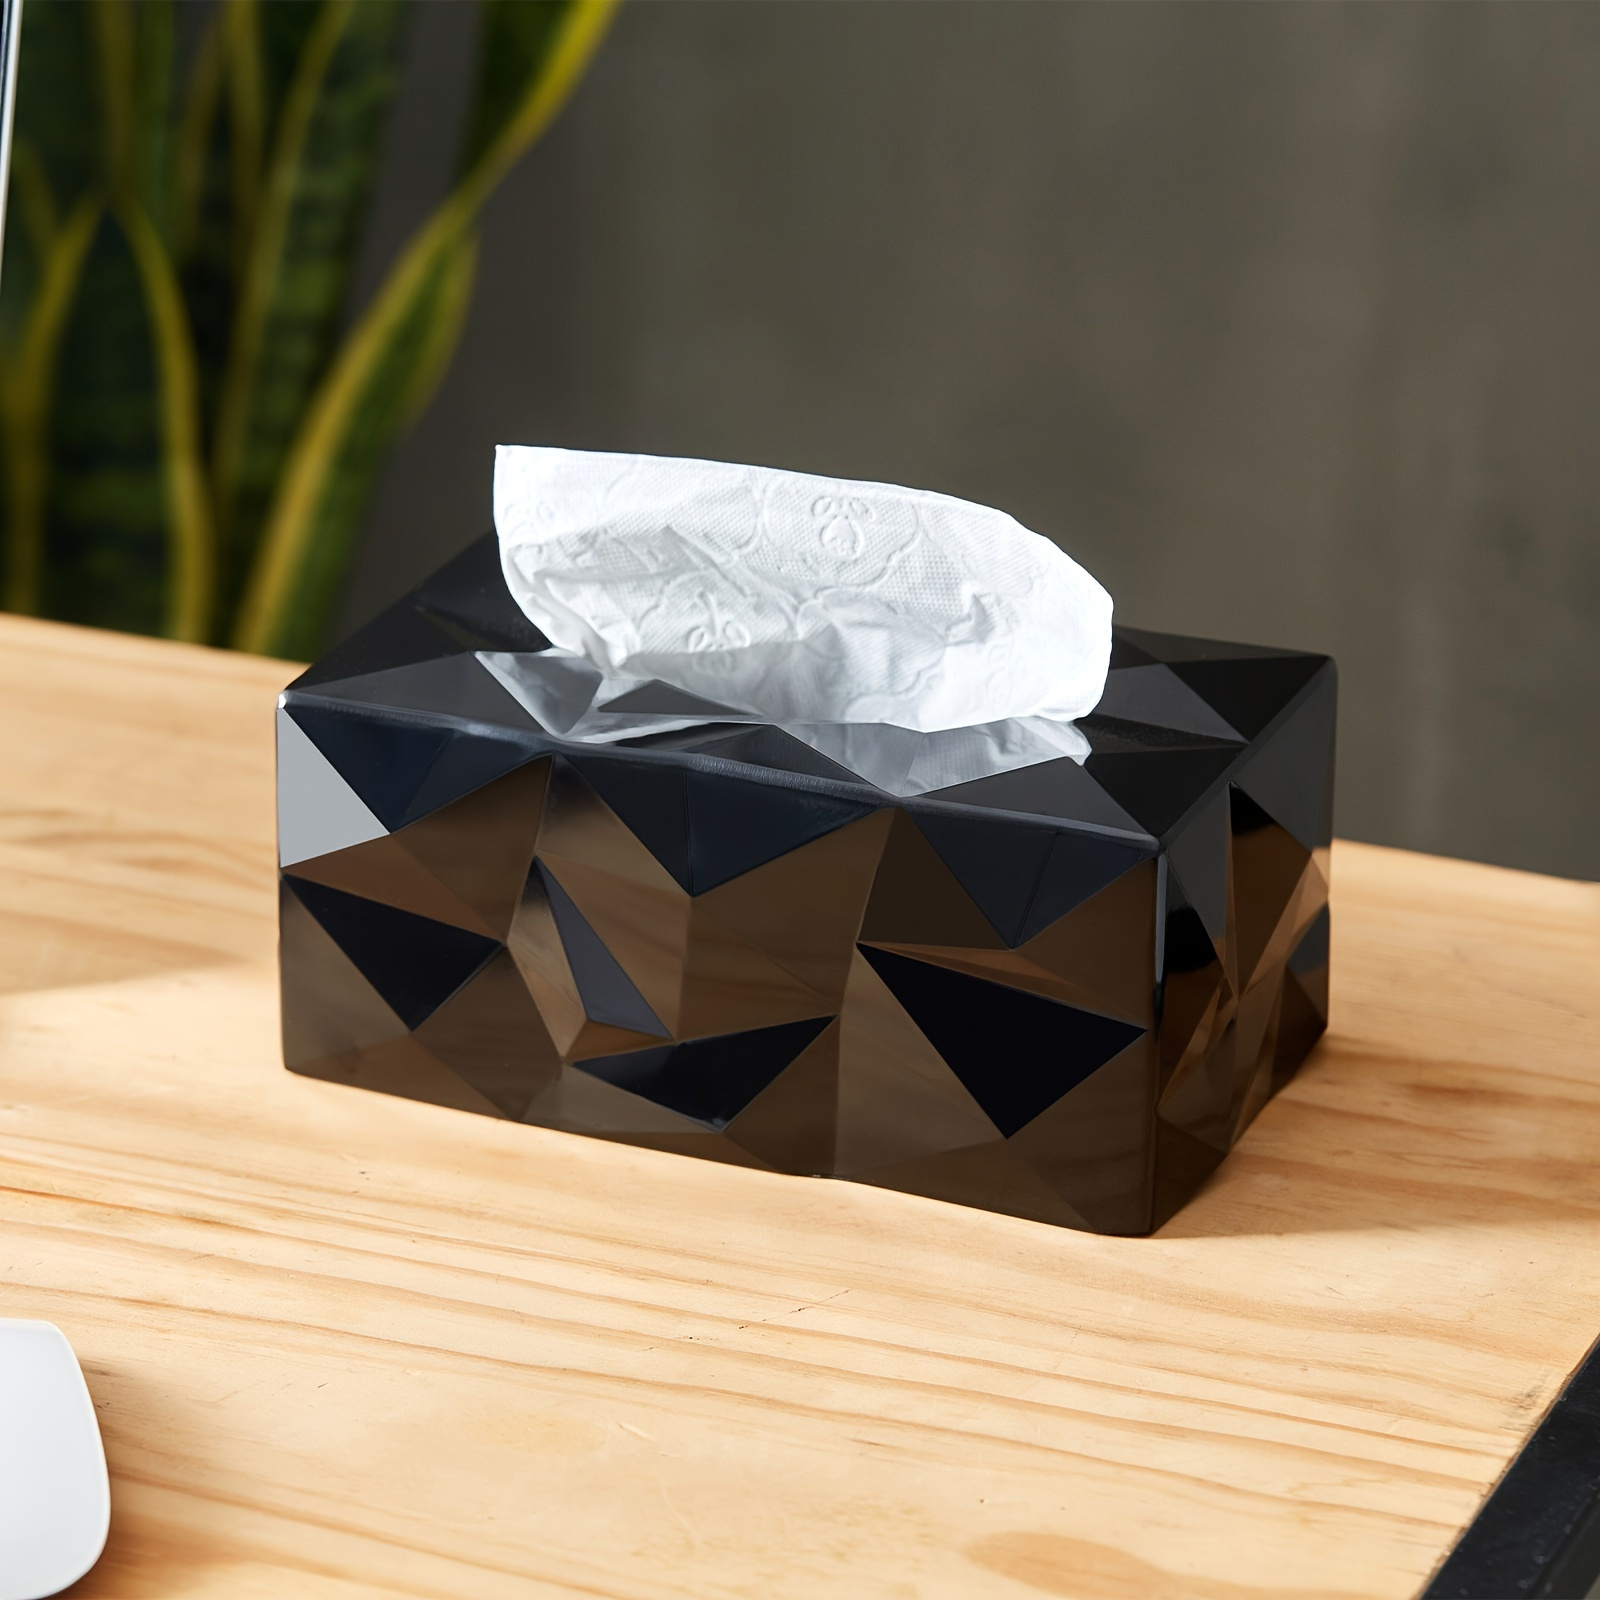 Boîte à mouchoirs rectangulaire noire design wipy essey